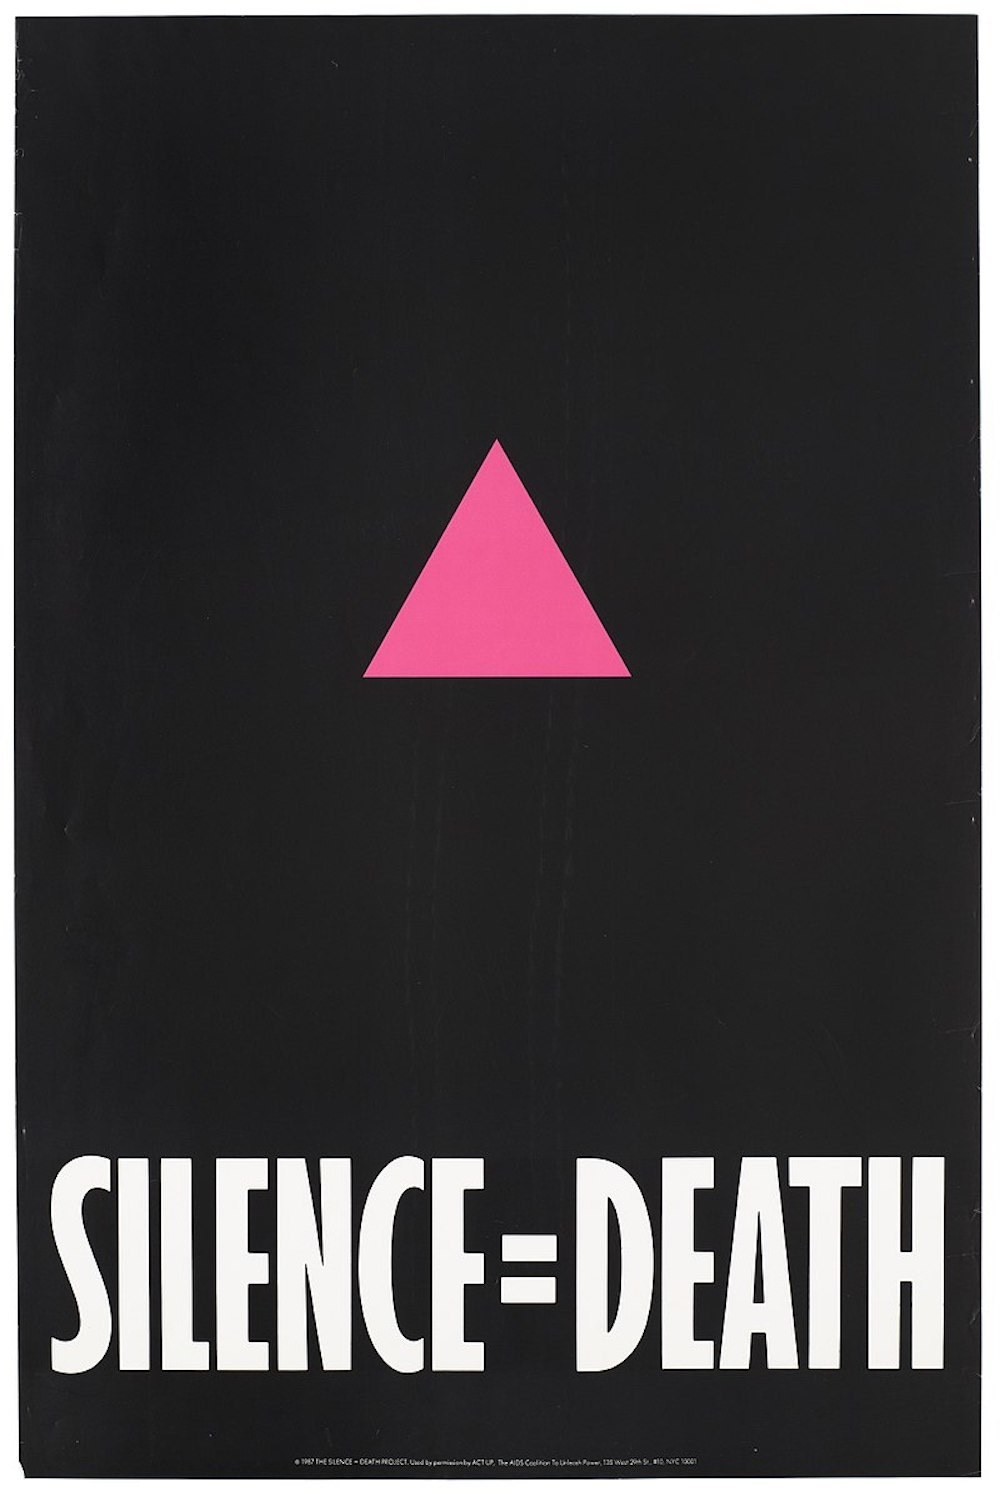 “Silence = Death”, cartaz de 1986 em campanha para a conscientização sobre a AIDS.